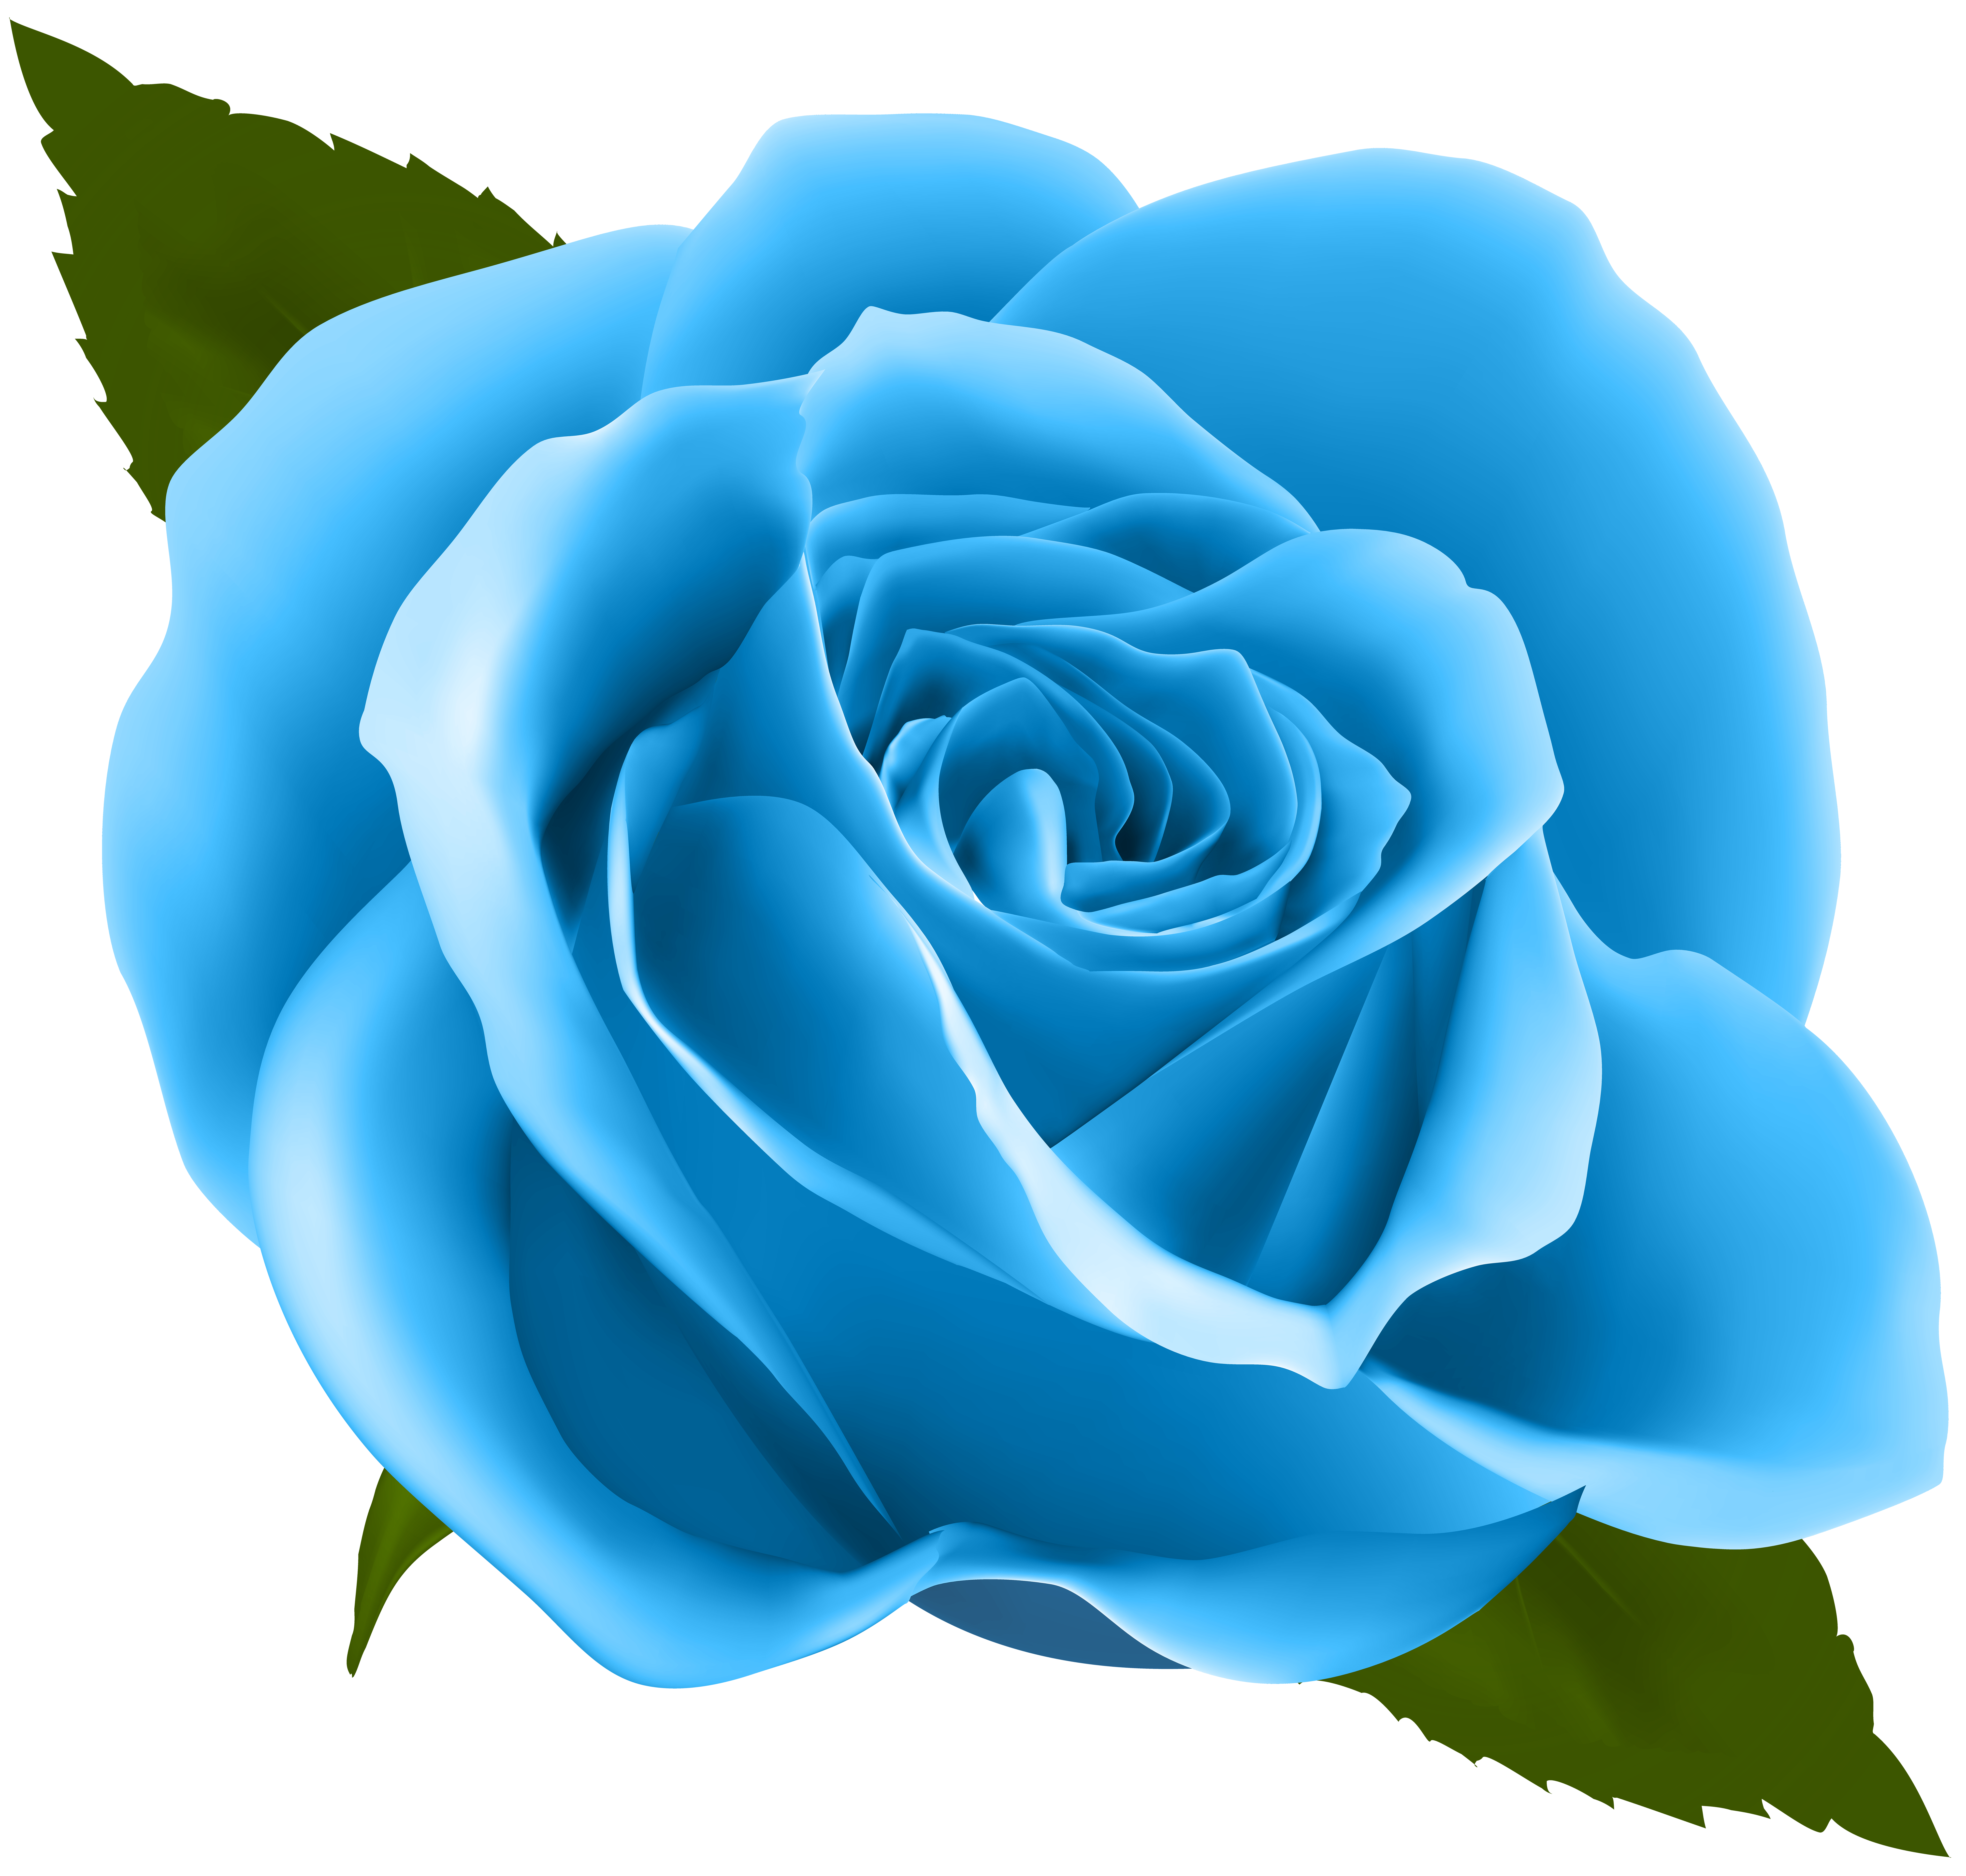 Blue Rose PNG Clip Art Image.